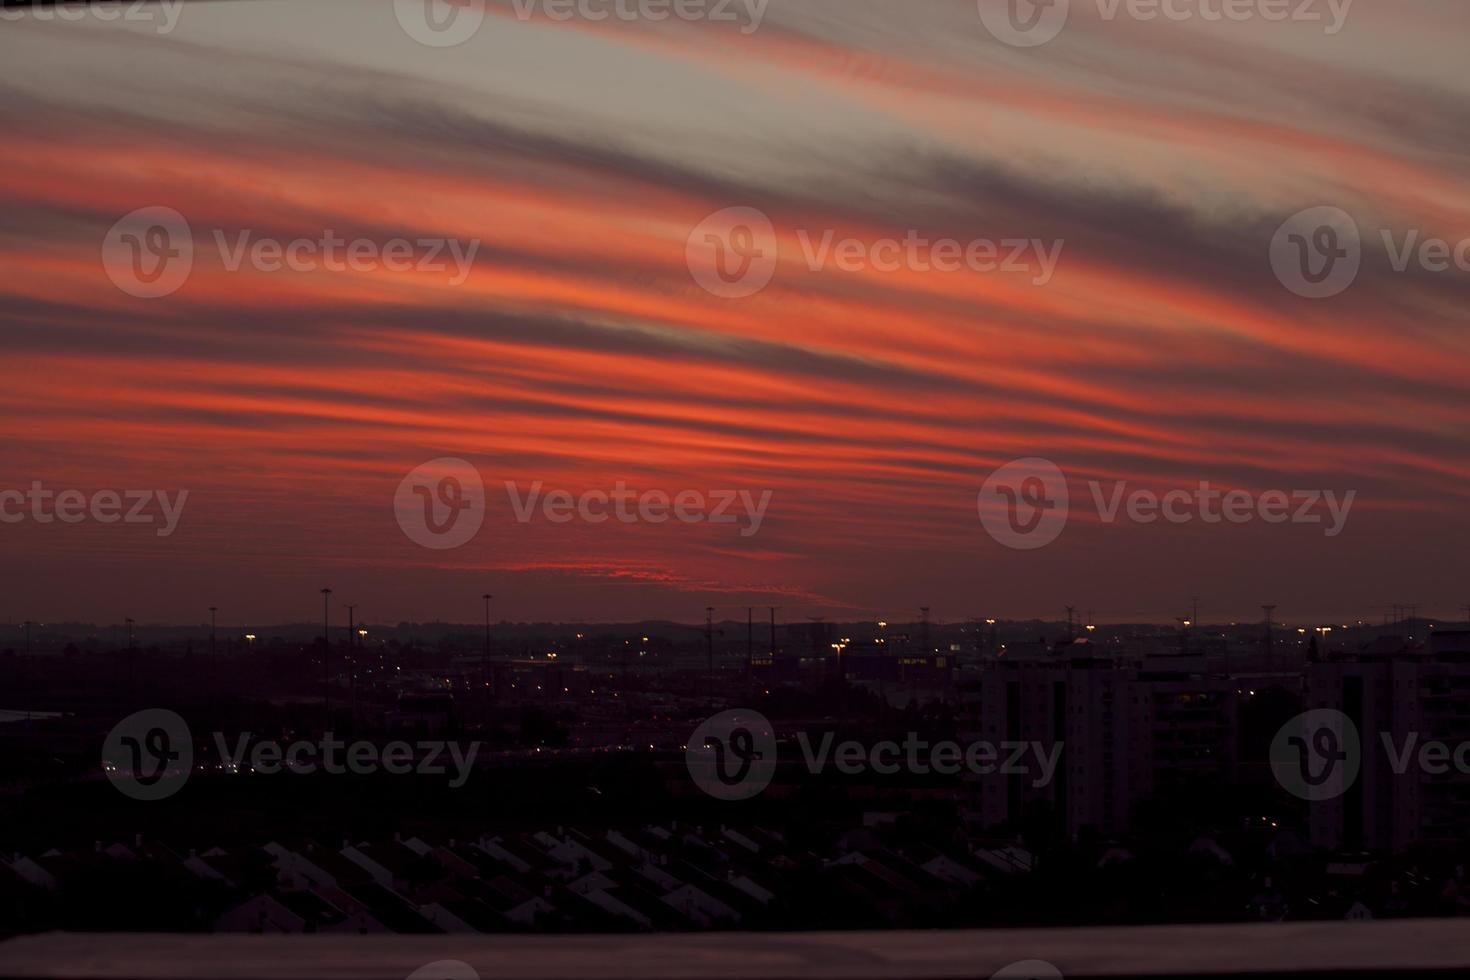 un tramonto pazzesco in israele vedute della terra santa foto